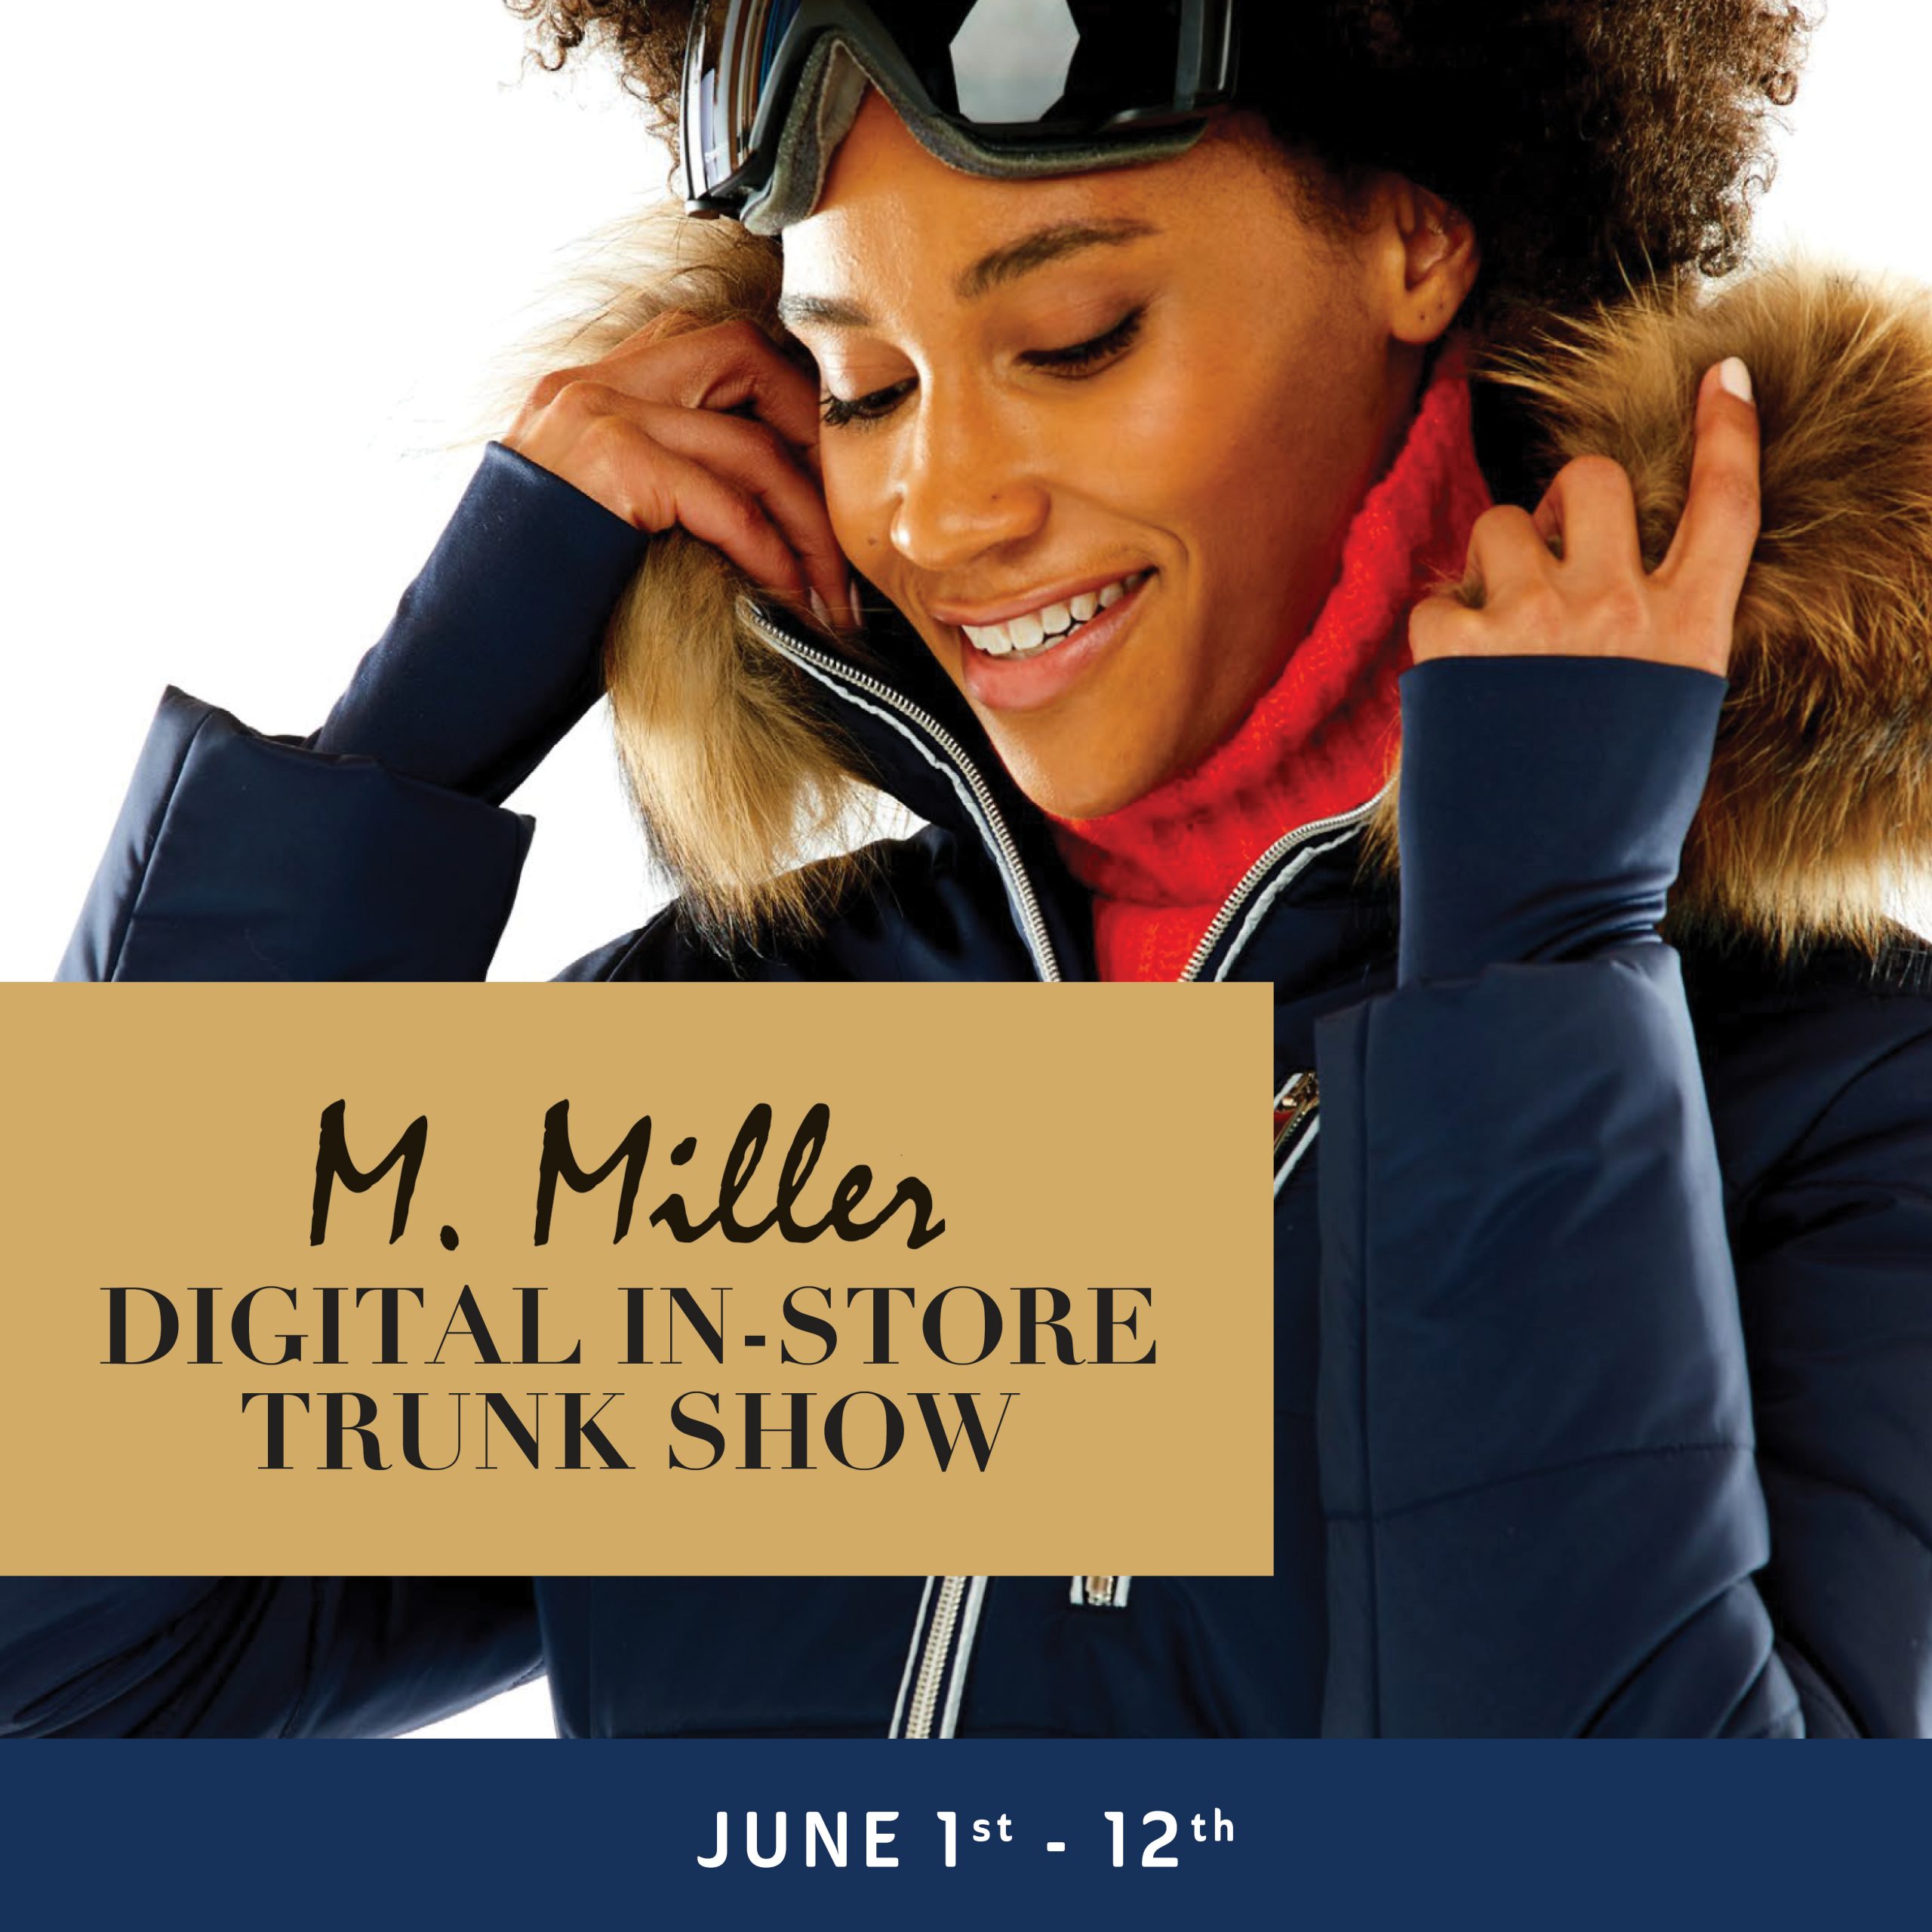 M. Miller Trunk Show